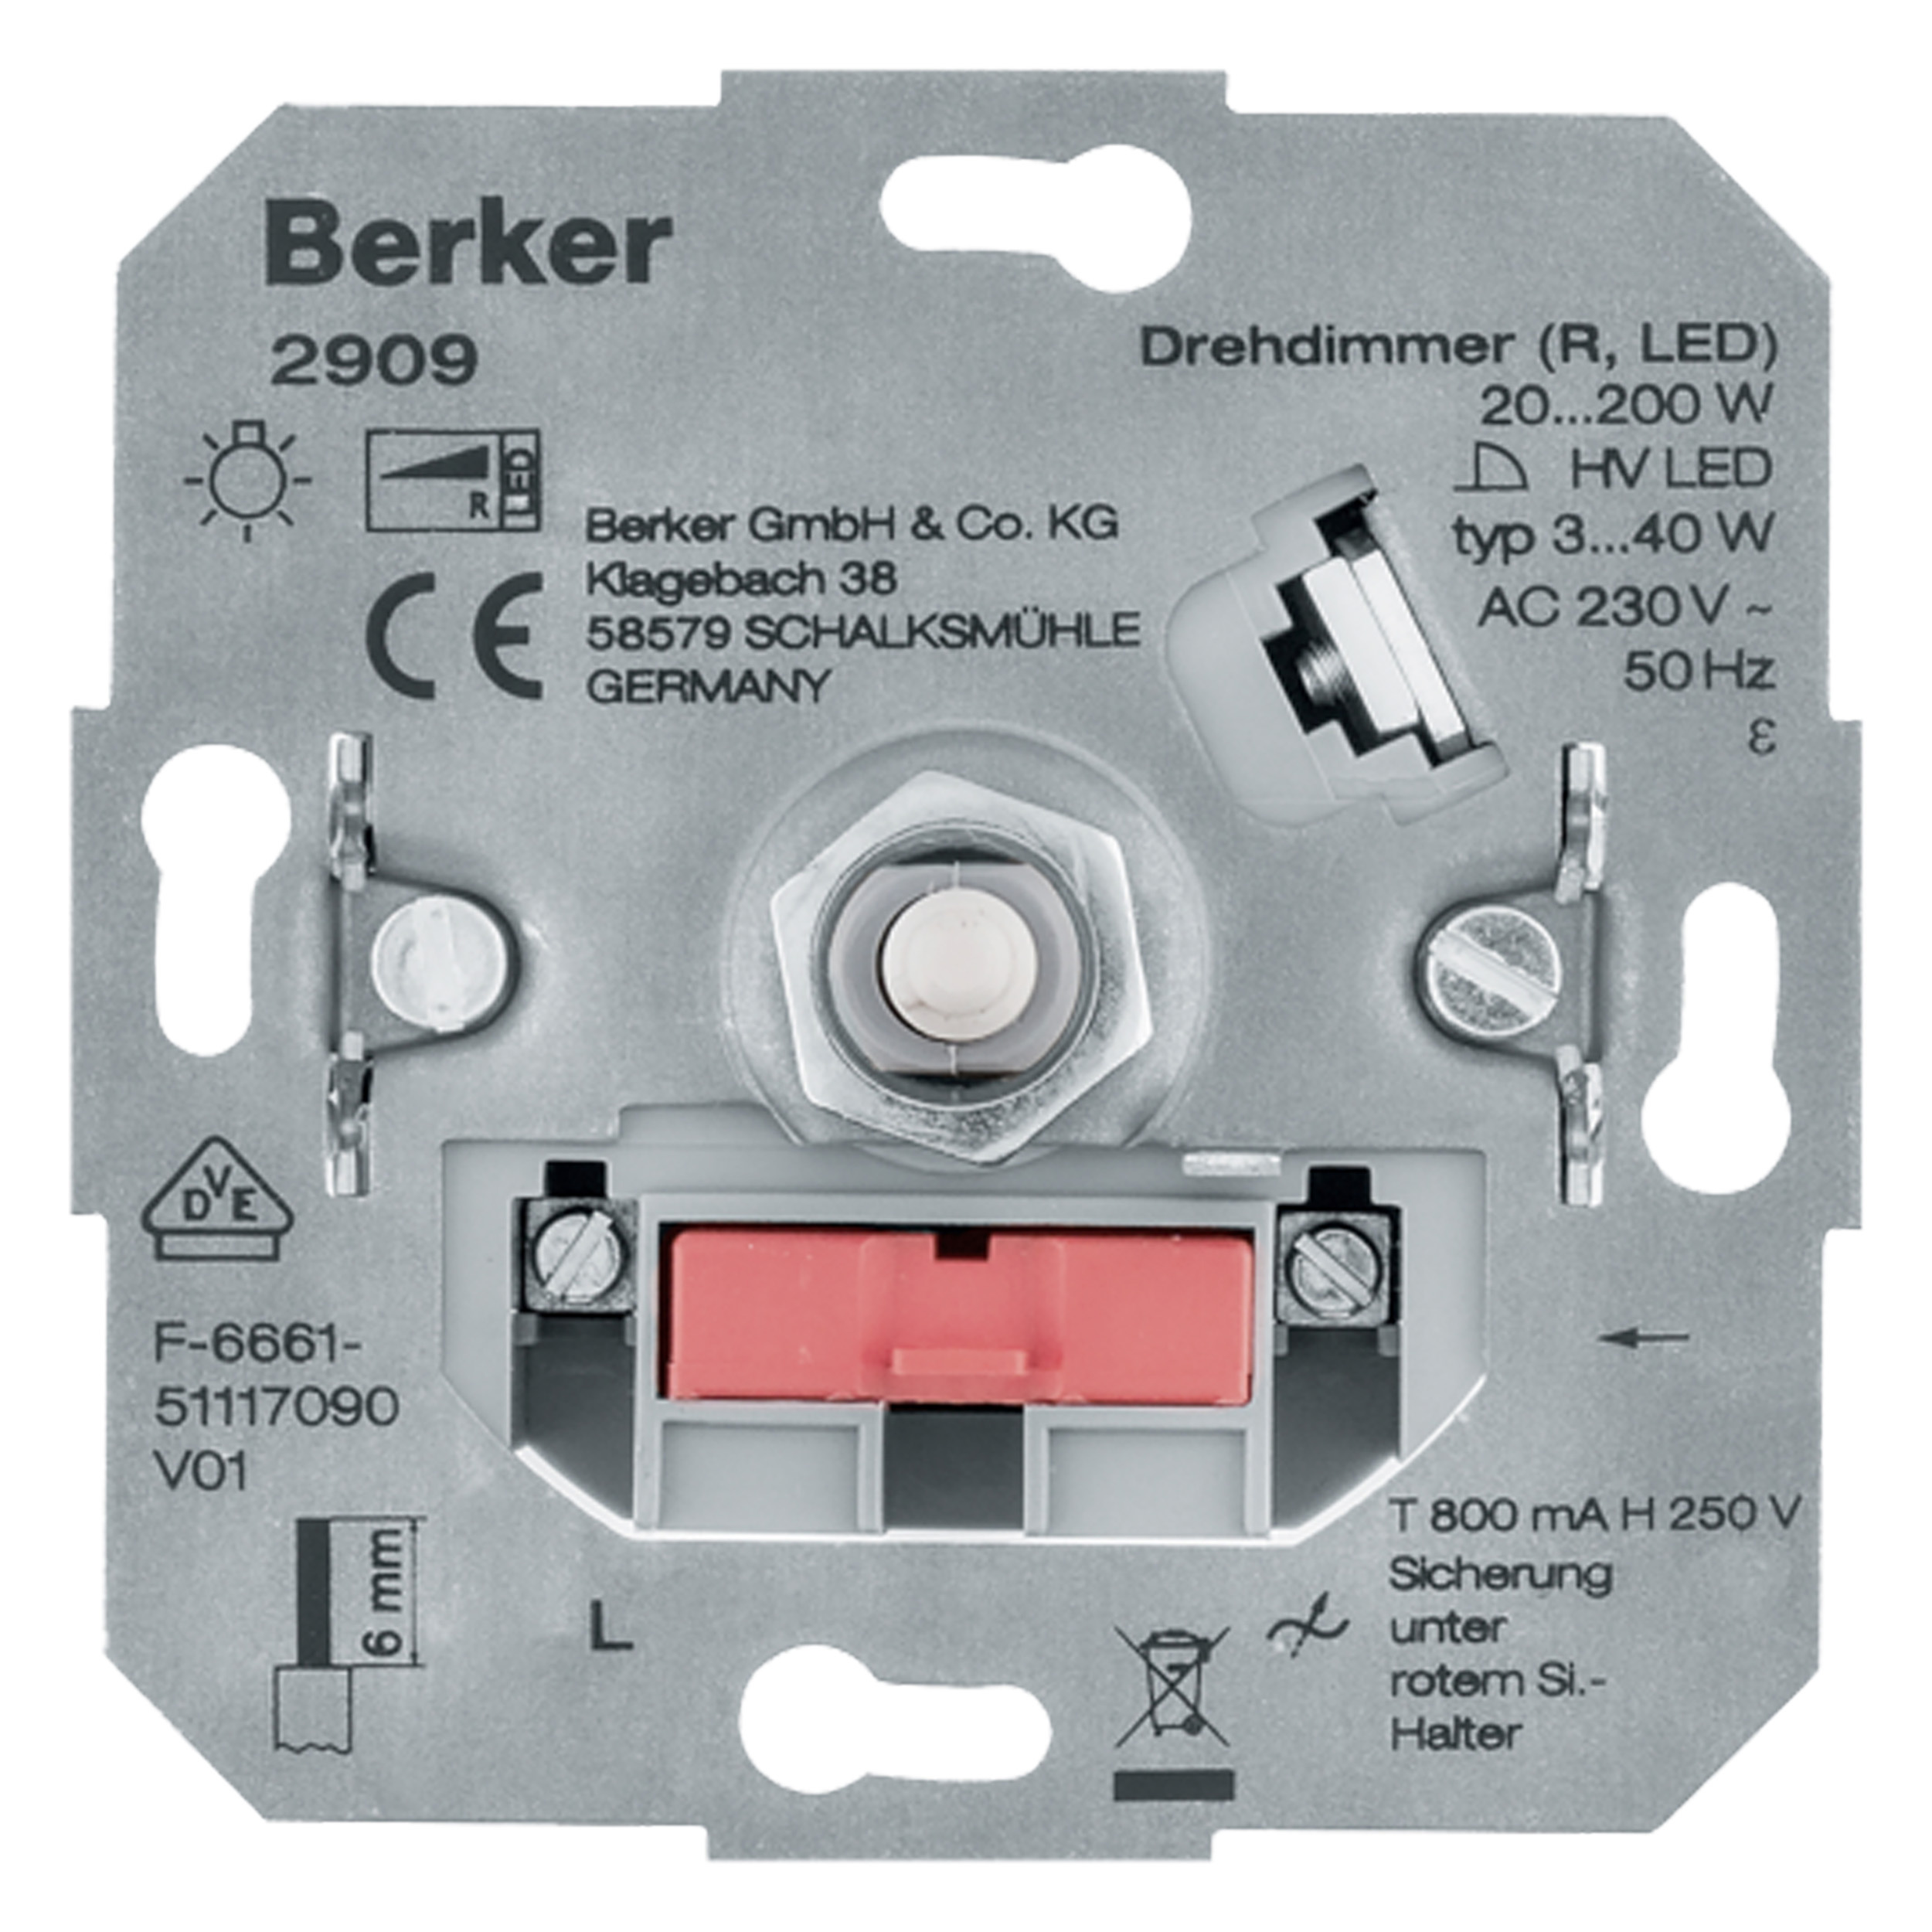 5401092 - Dimmer inbouw LED draai-uit - Berker Inbouw standaard - Schakelmateriaal - Elektra - | SHI